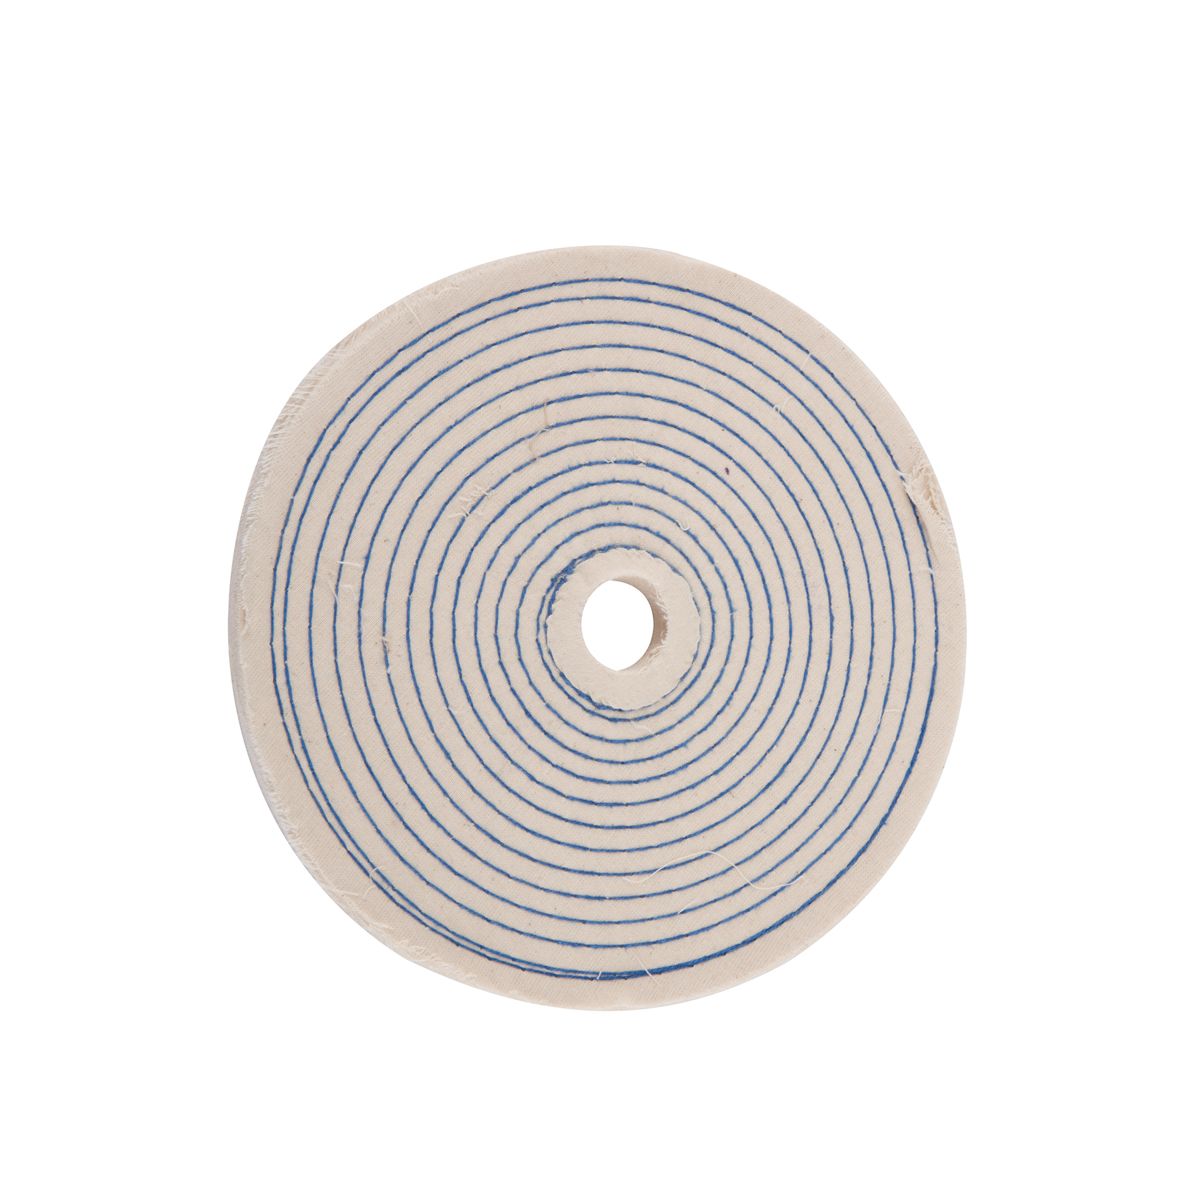 WARRIOR 8 in. Spiral Cotton Buffing Wheel